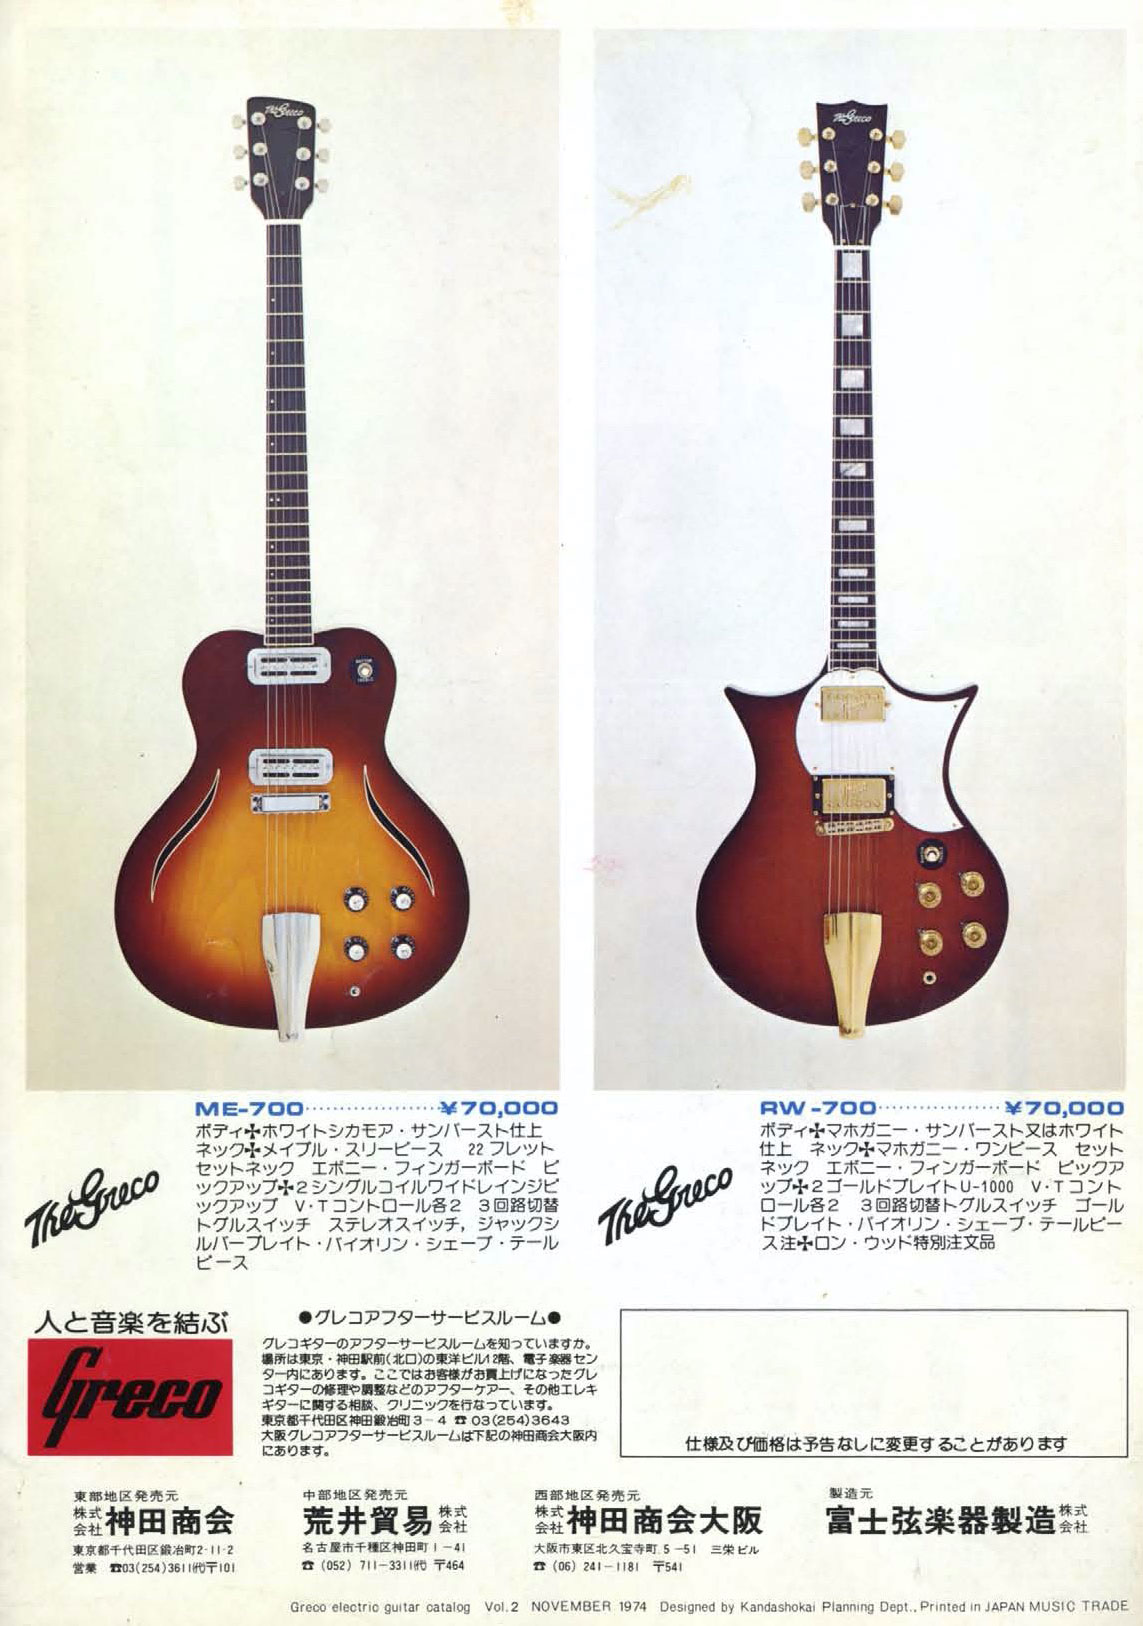 Grecoの1974年エレキギターカタログvol.2 - ビンテージギターカタログ